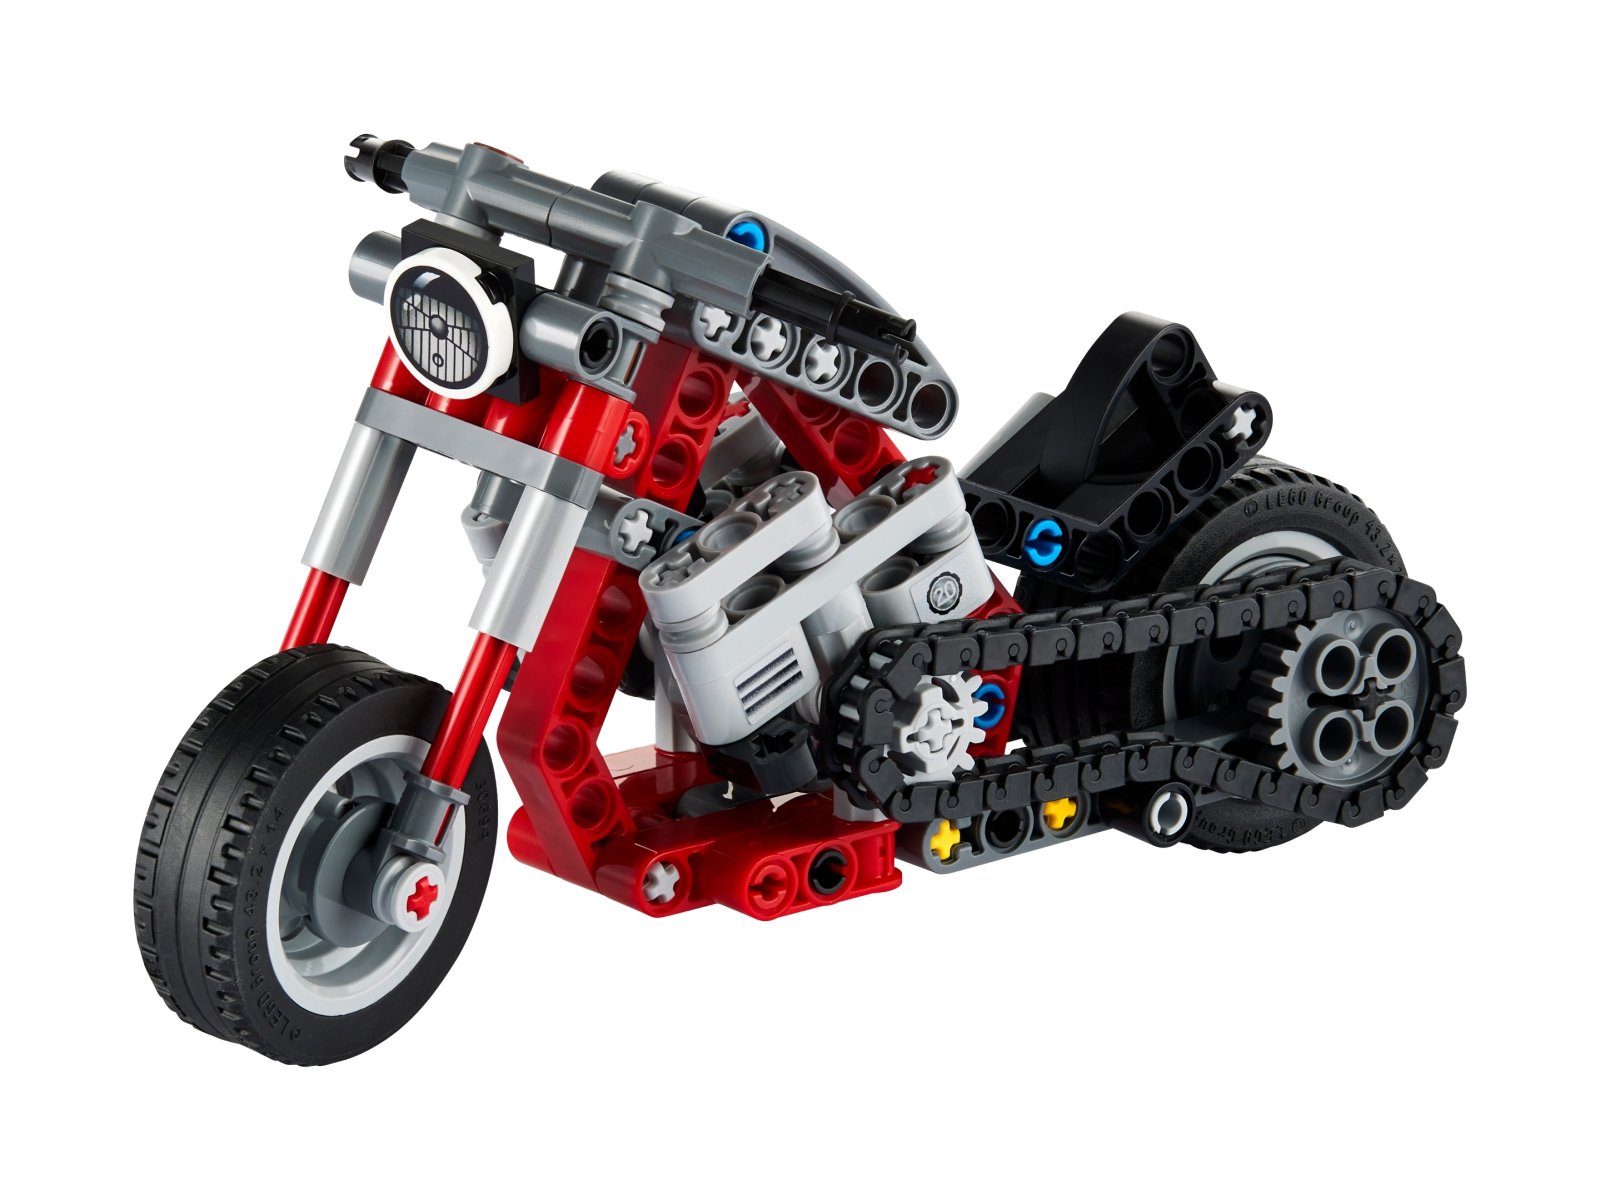 LEGO 42132 Technic Motocykl